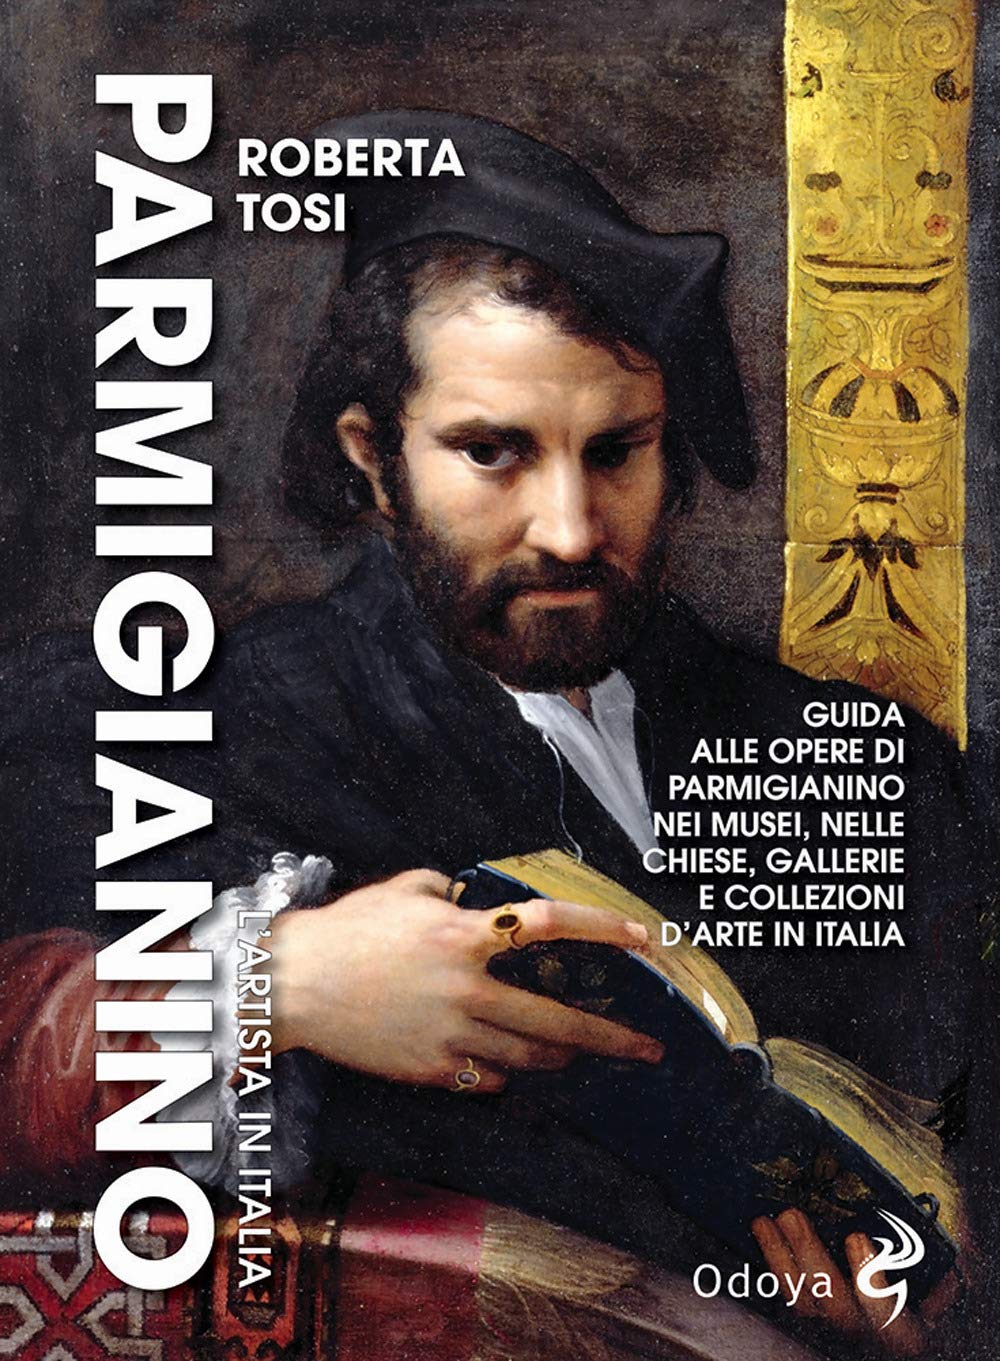 Libri Roberta Tosi - Parmigianino. L'artista In Italia NUOVO SIGILLATO, EDIZIONE DEL 29/04/2021 SUBITO DISPONIBILE